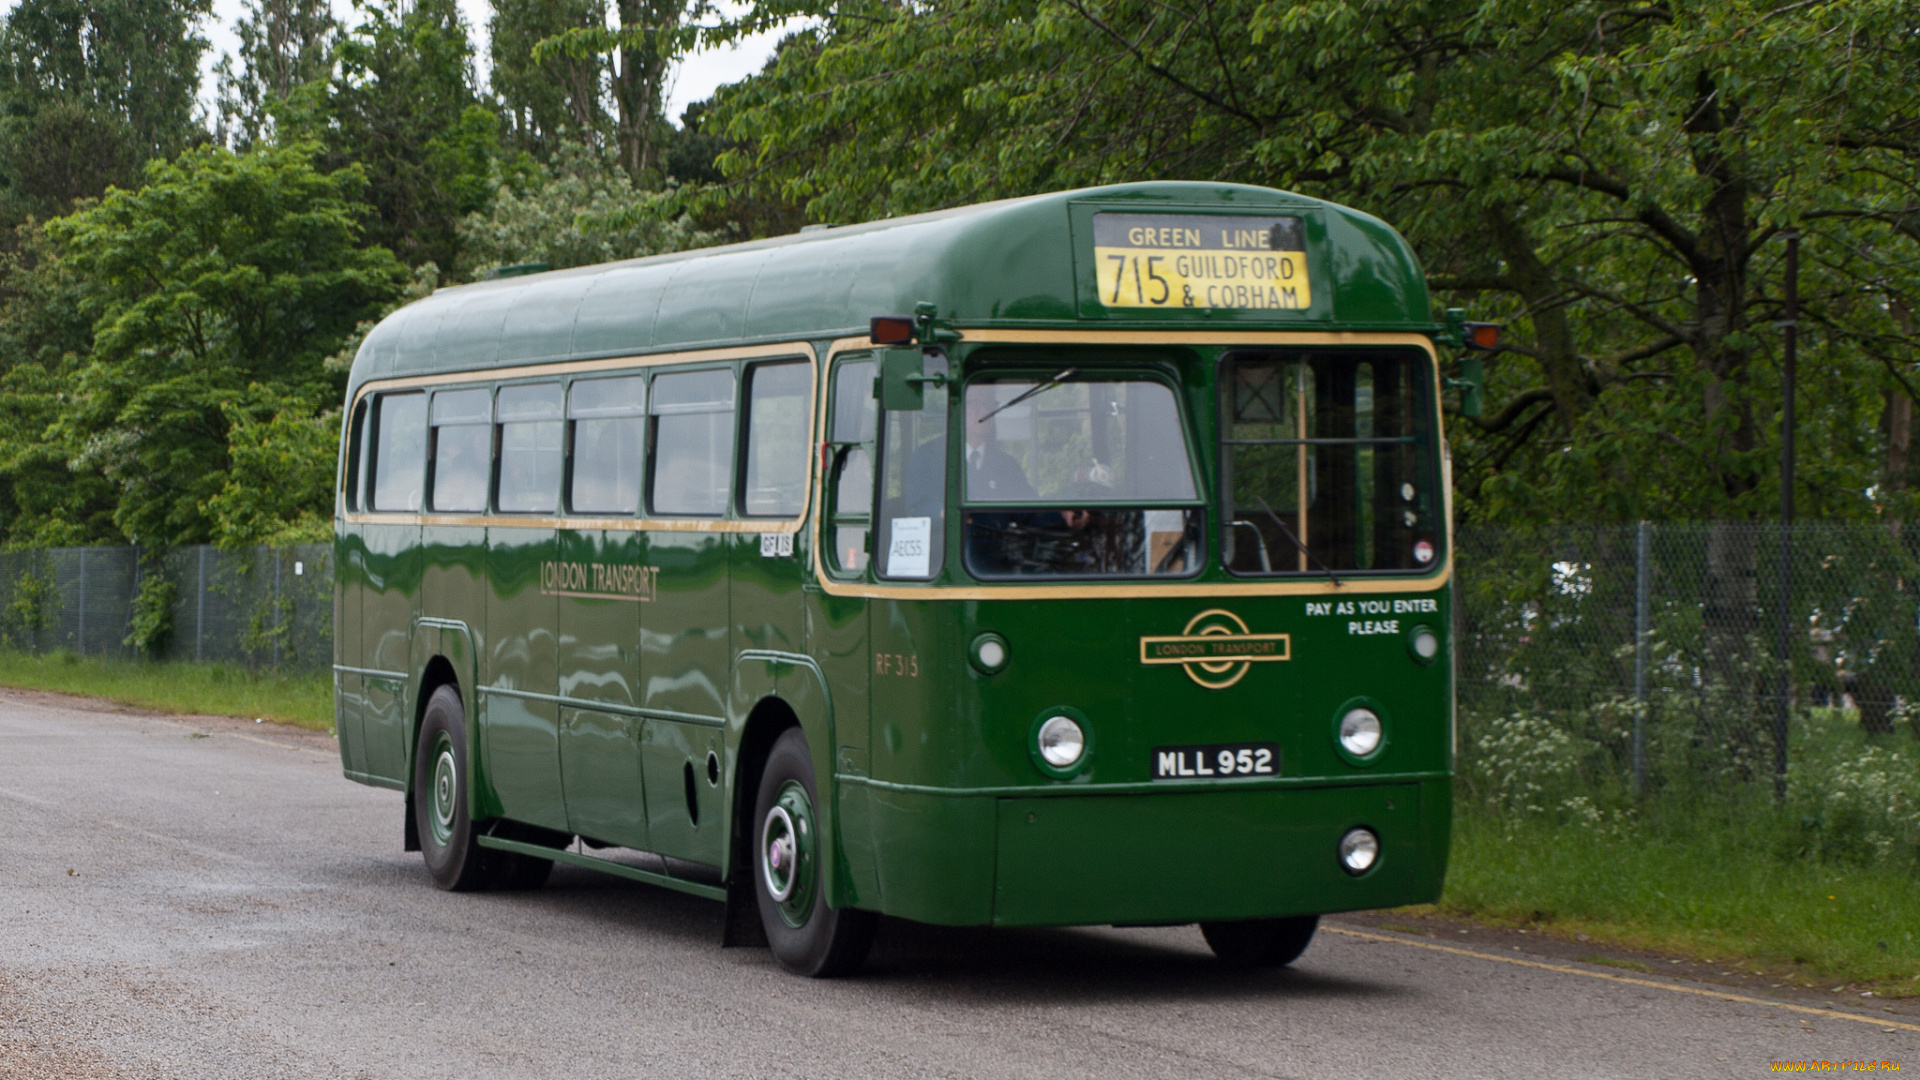 1952, aec, regal, lvmetro, cammell, london, transport, rf315, автомобили, автобусы, общественный, транспорт, автобус